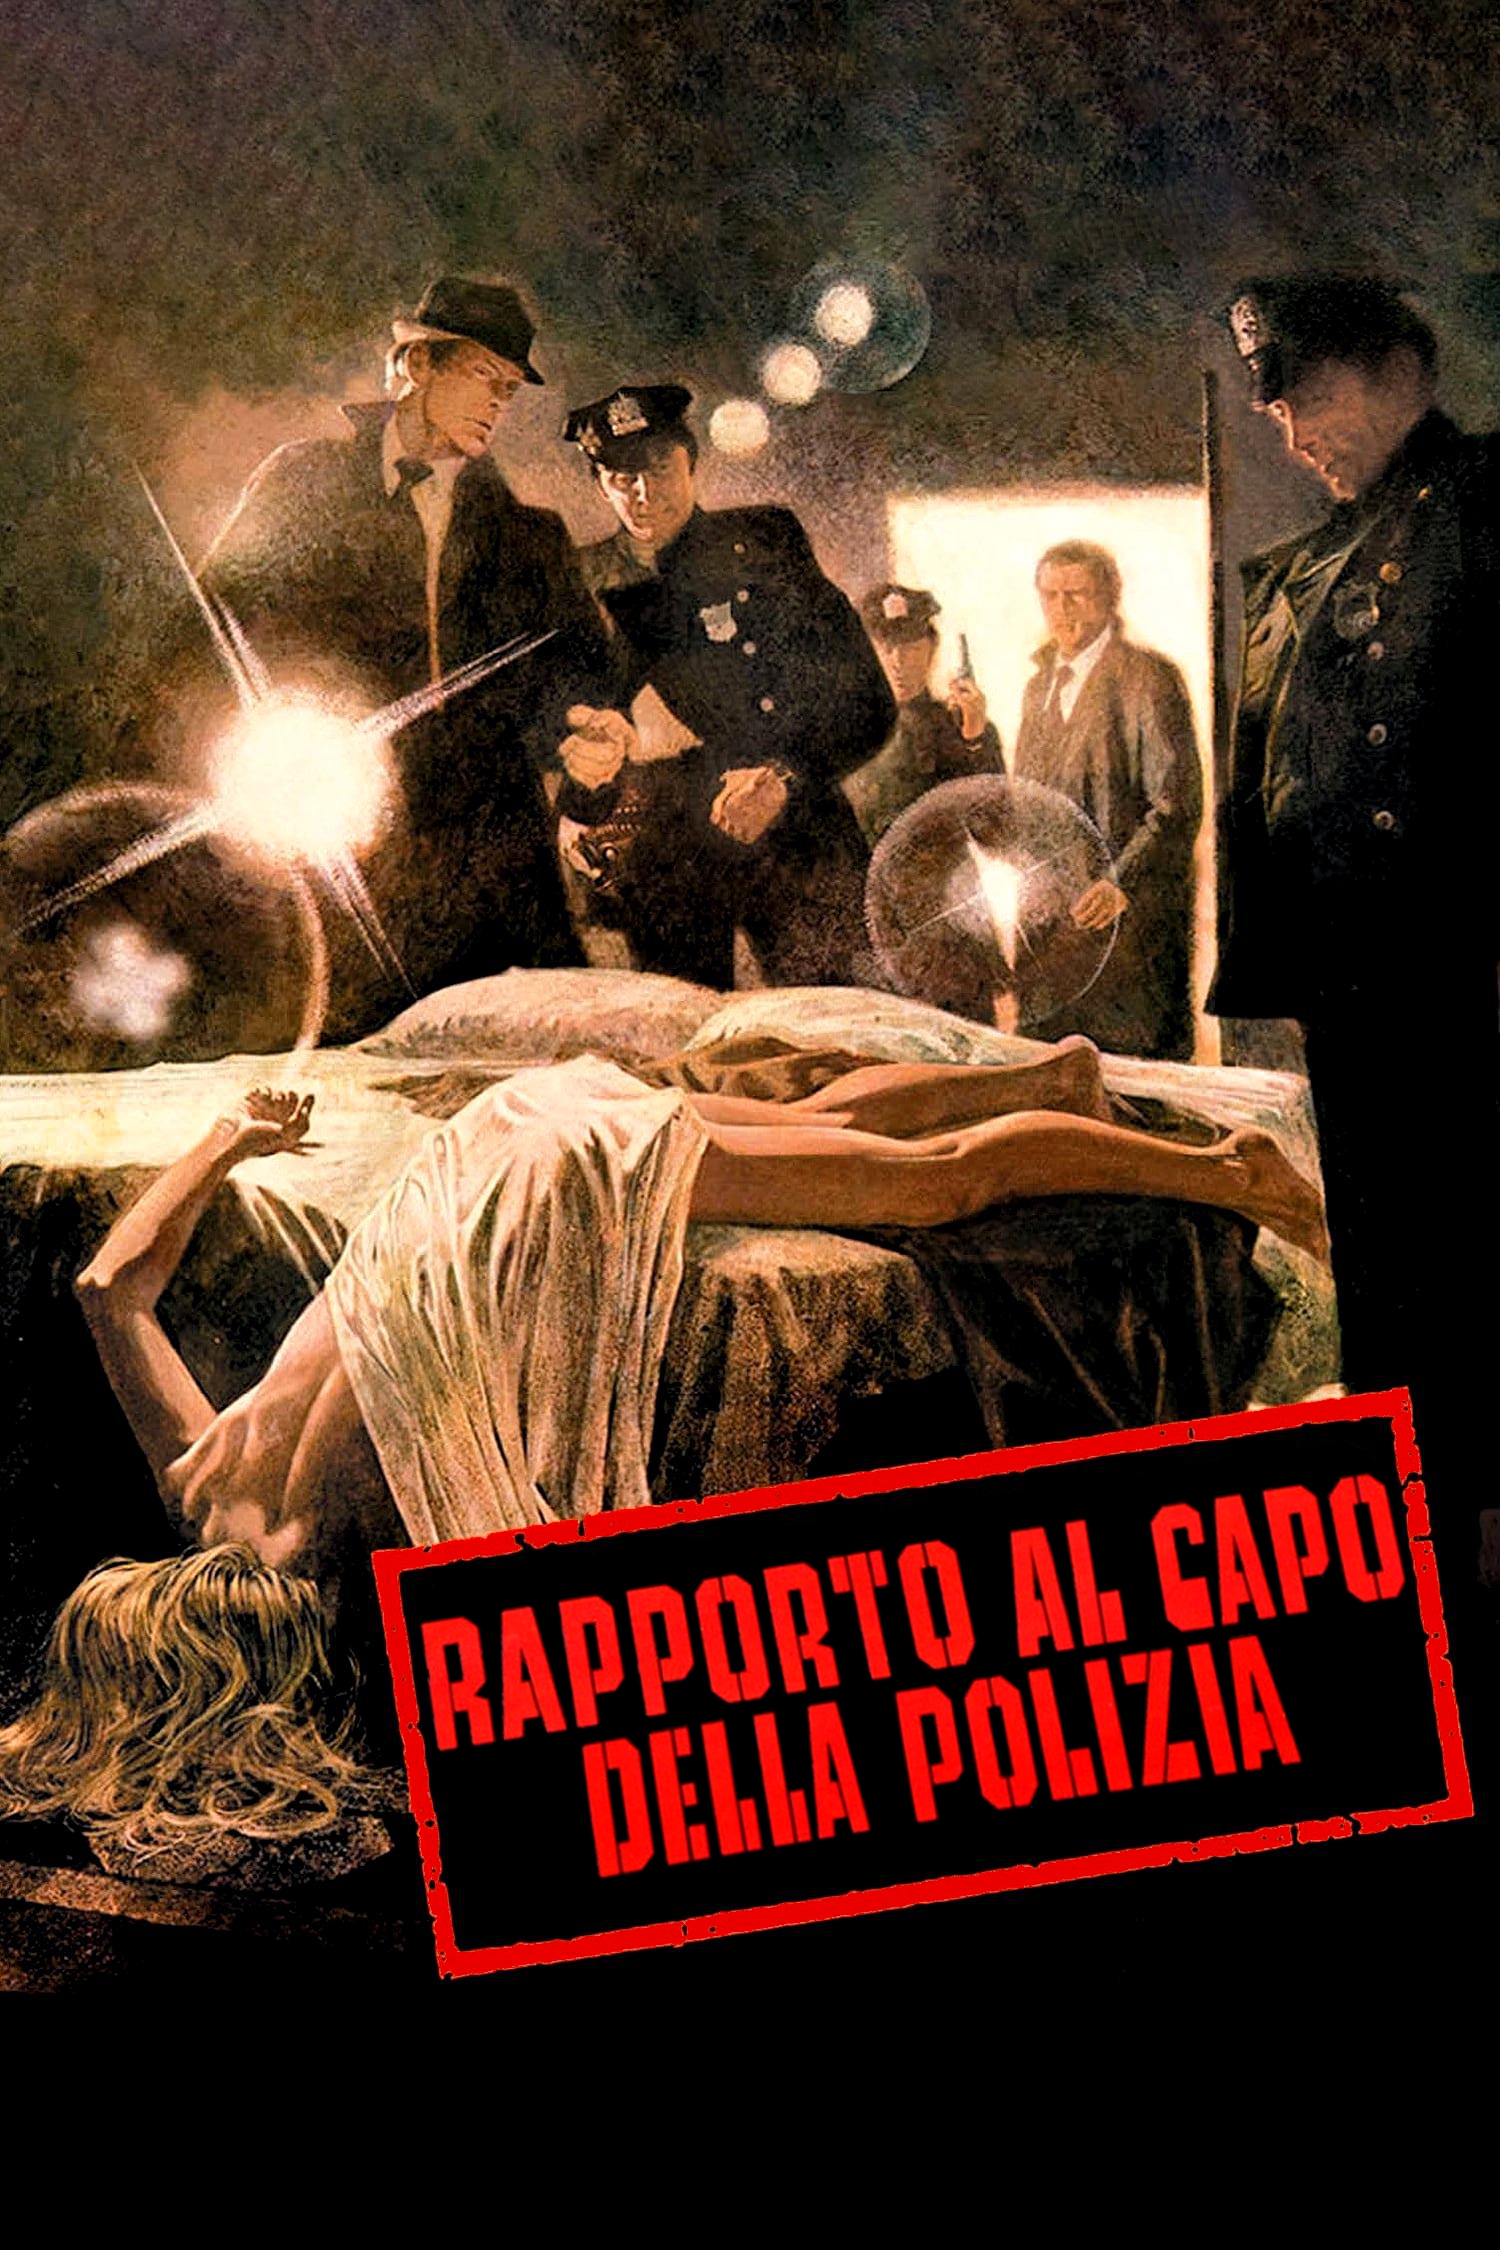 Rapporto al capo della polizia (1975)